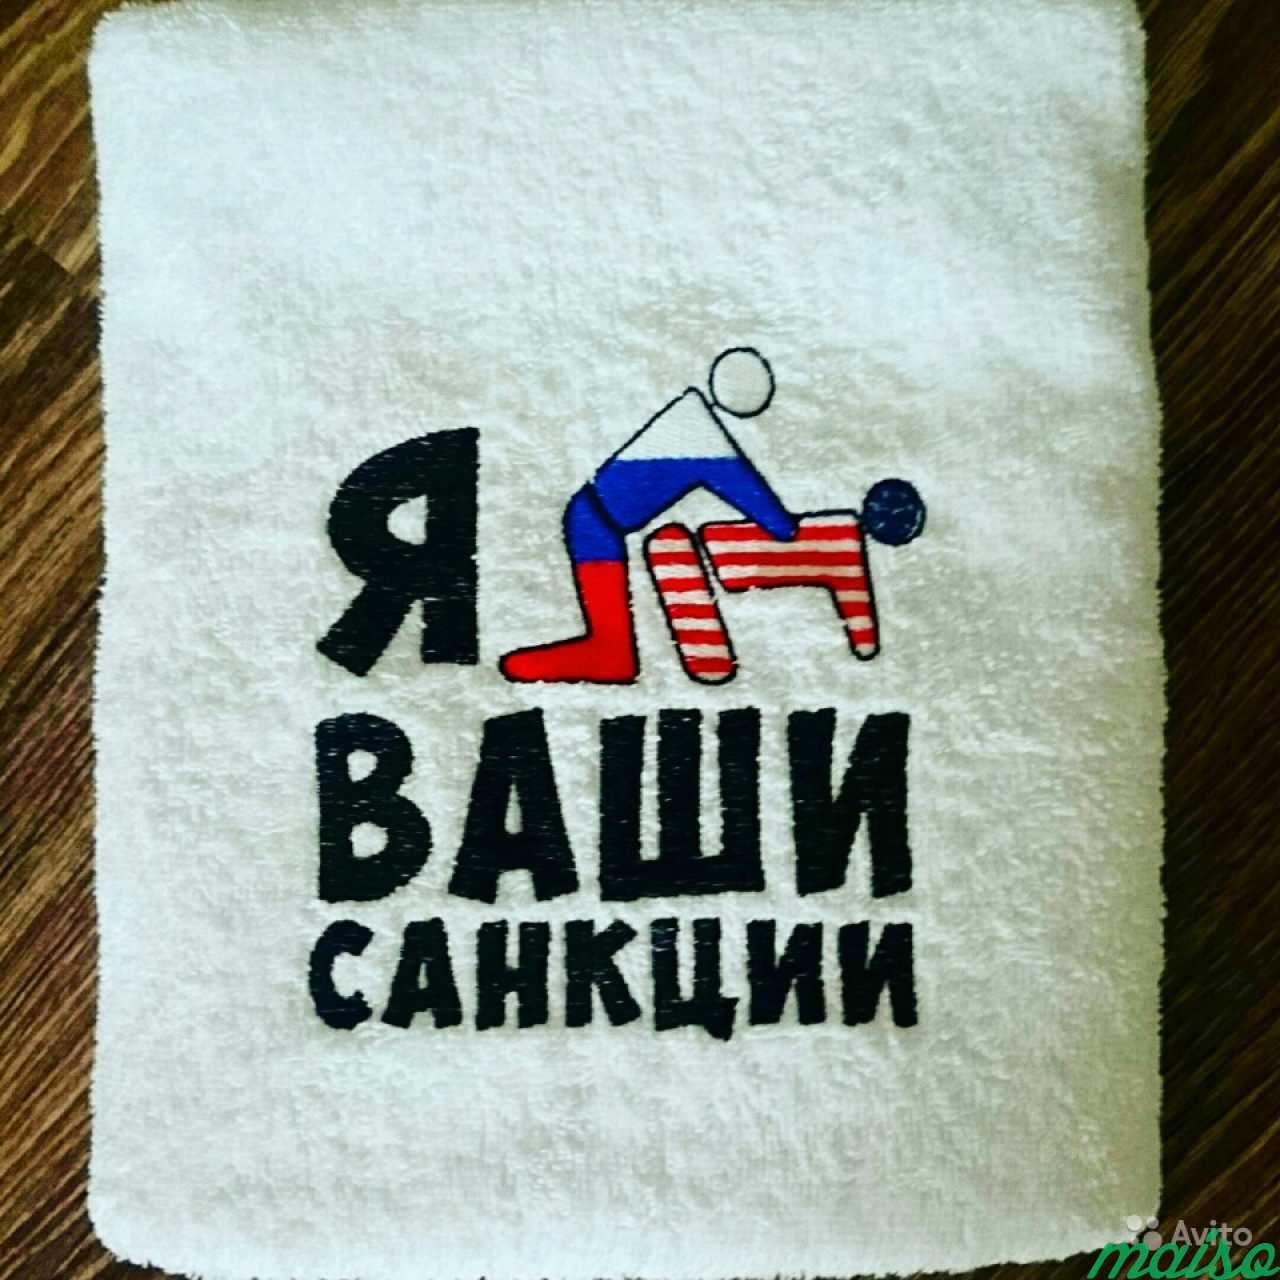 Машинная вышивка в Санкт-Петербурге. Фото 3